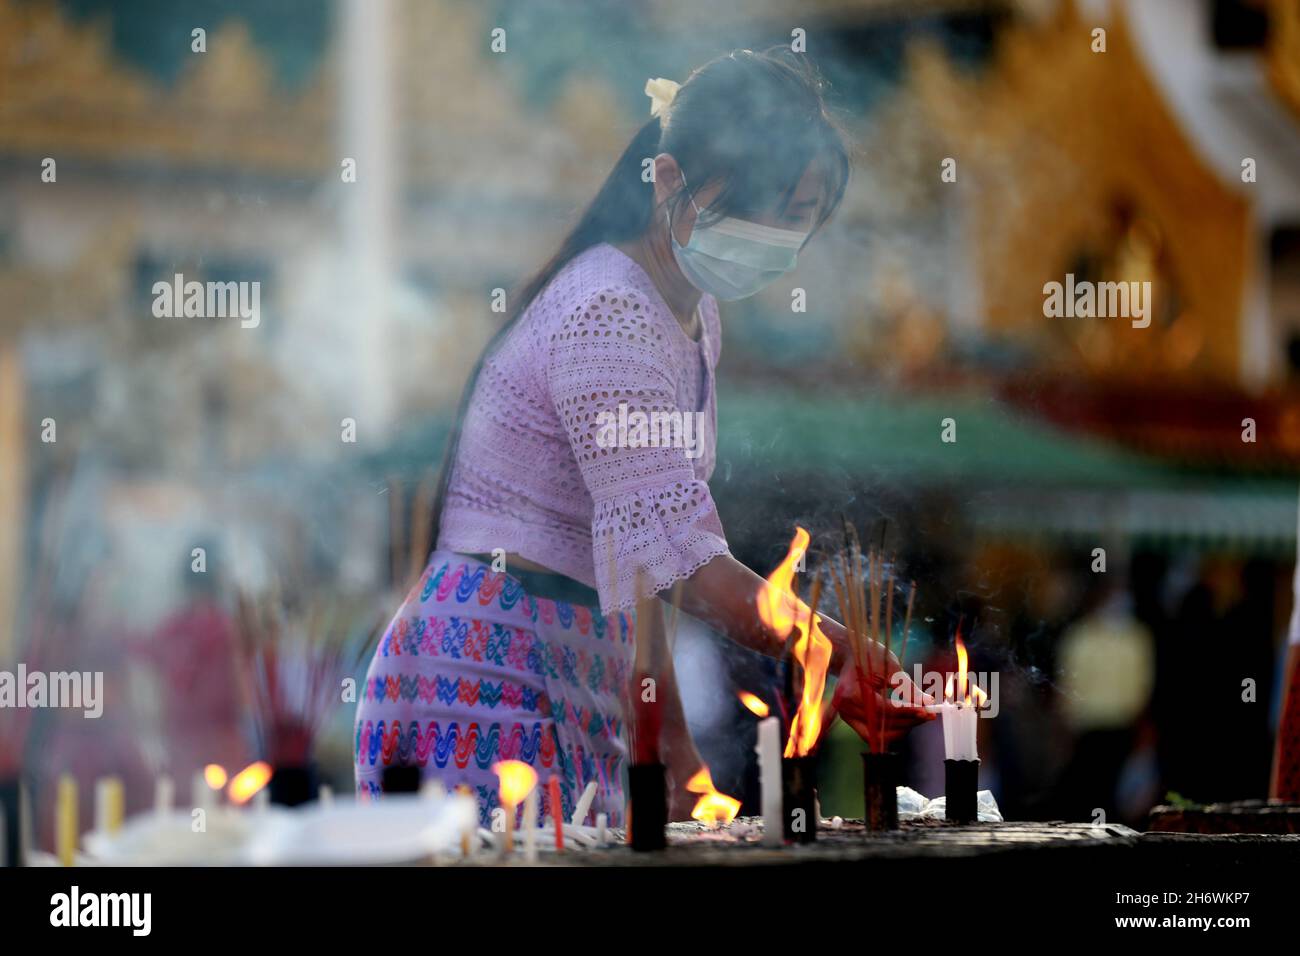 Yangon, Myanmar. November 2021. Eine Frau zündet während des traditionellen Tazaungdaing Festivals in der Shwedagon Pagode in Yangon, Myanmar, am 18. November 2021 Kerzen an. Das Tazaungdaing Festival, auch bekannt als das Festival of Lights, fällt in den achten Monat des traditionellen myanmarischen Kalenders. Es wird als Nationalfeiertag in Myanmar gefeiert. Quelle: U Aung/Xinhua/Alamy Live News Stockfoto